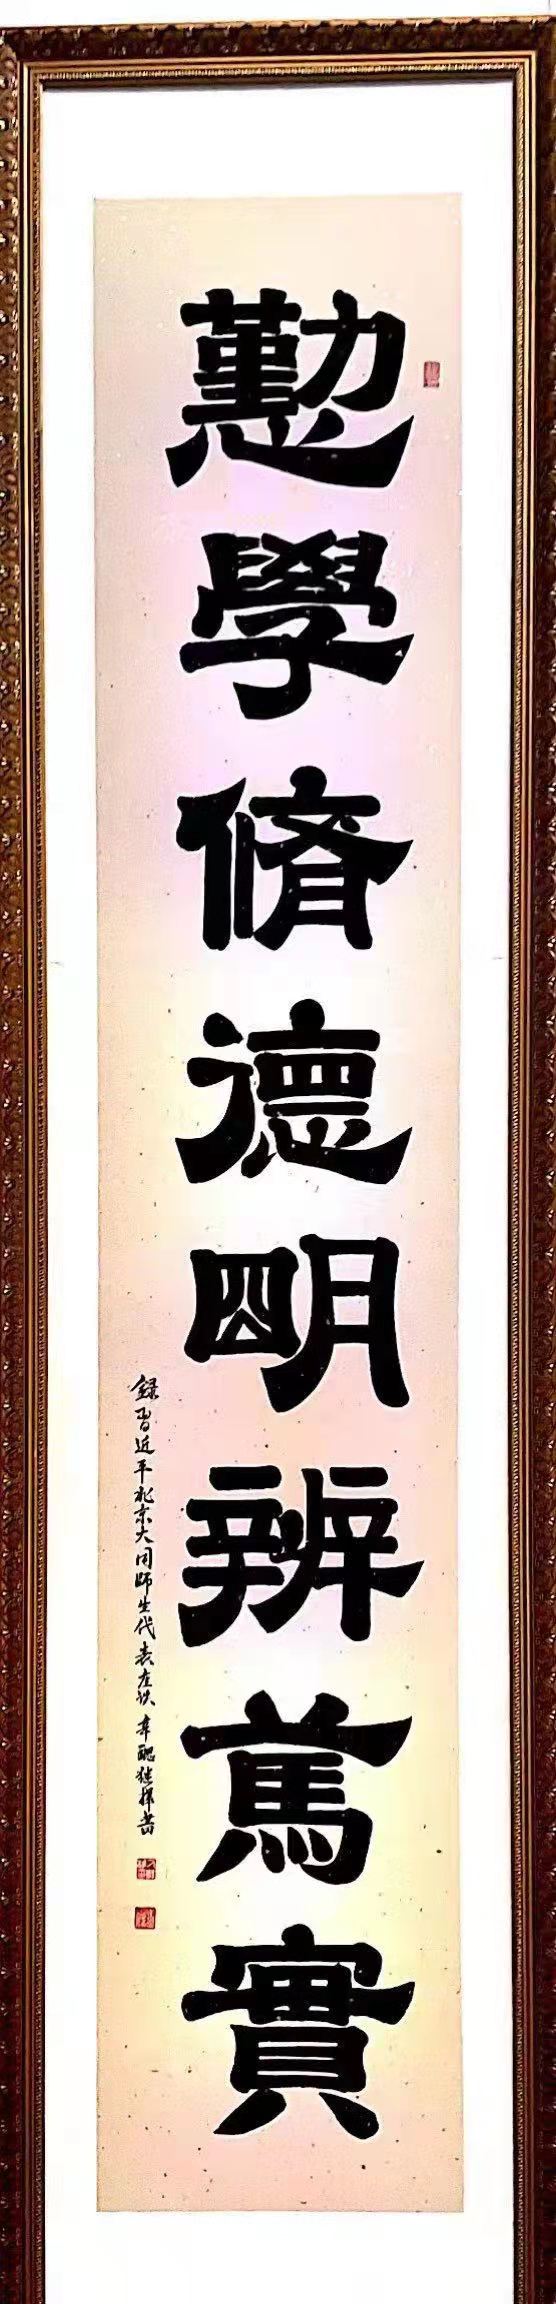 中国大众文化学会名人书画艺术发展委员会——刁继桦